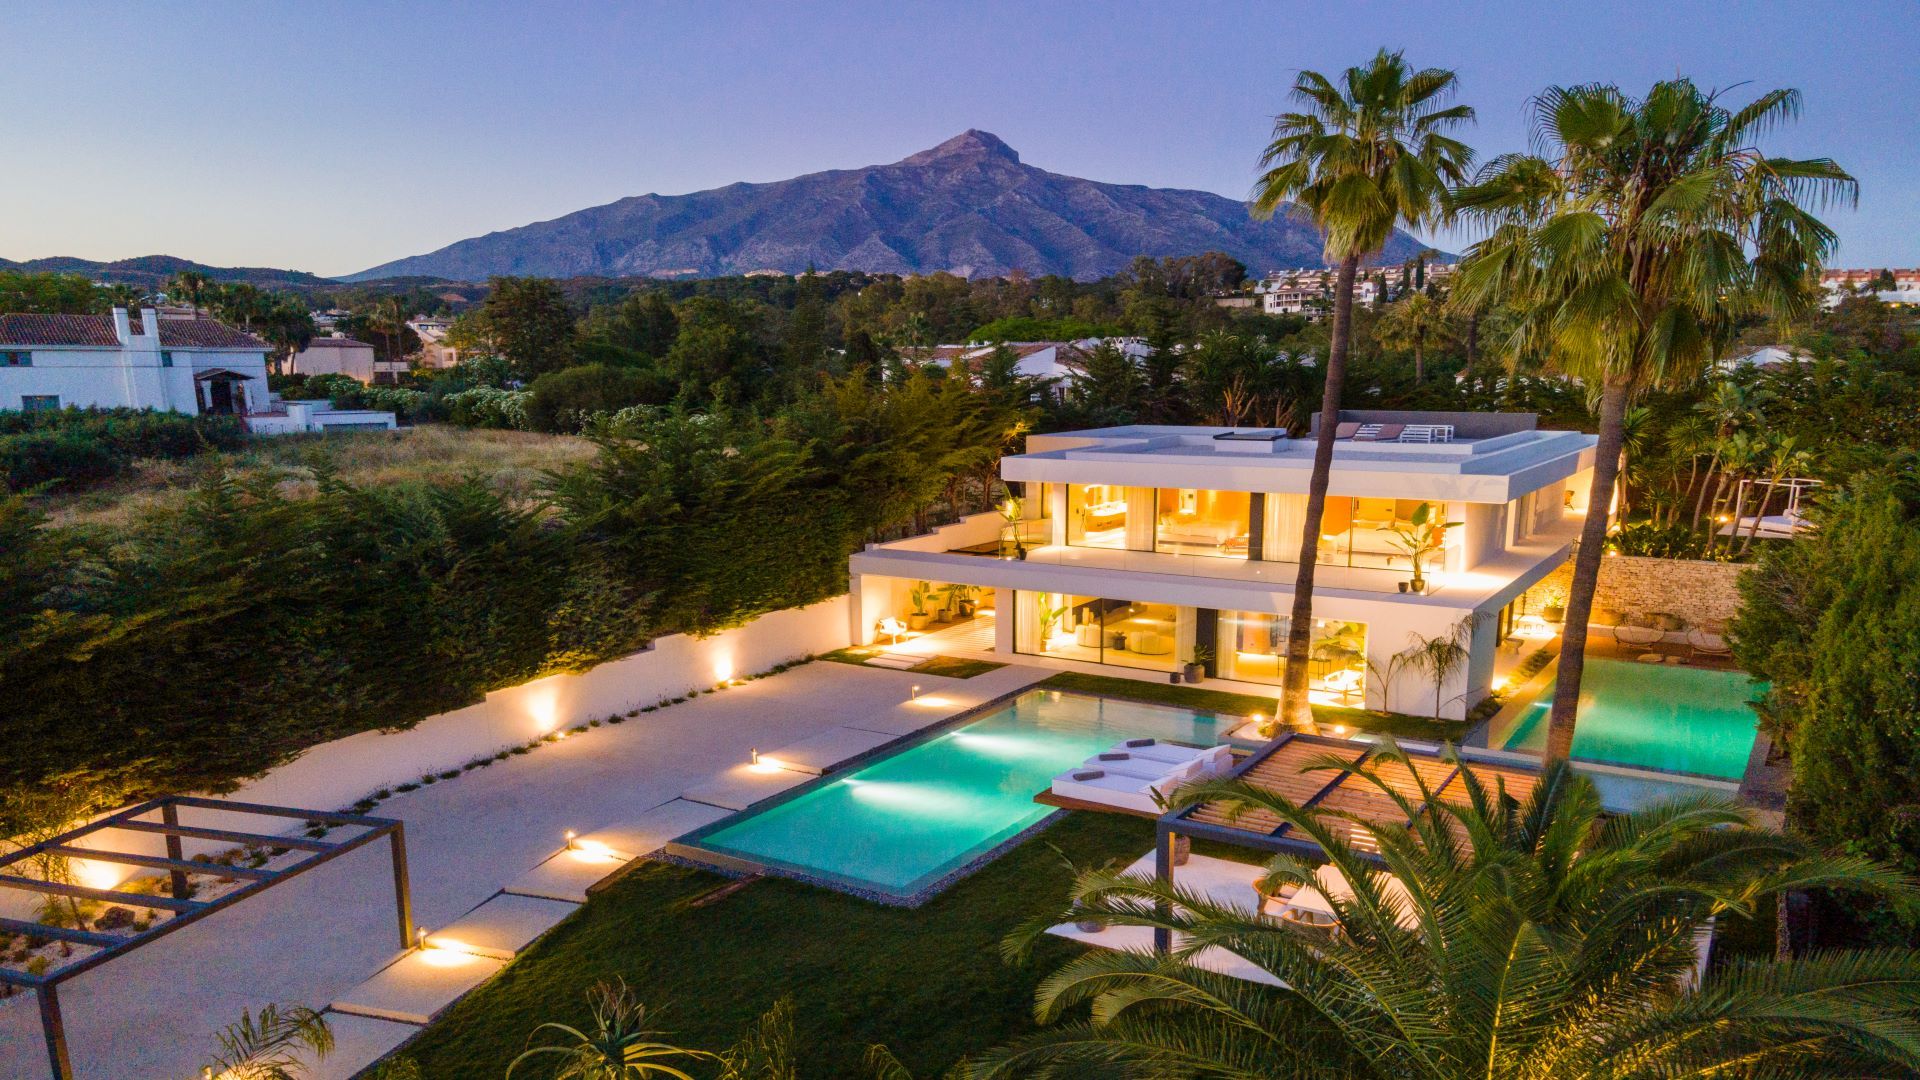 Spectacular Luxury Villa in High-Class Resort | Engel & Völkers Marbella